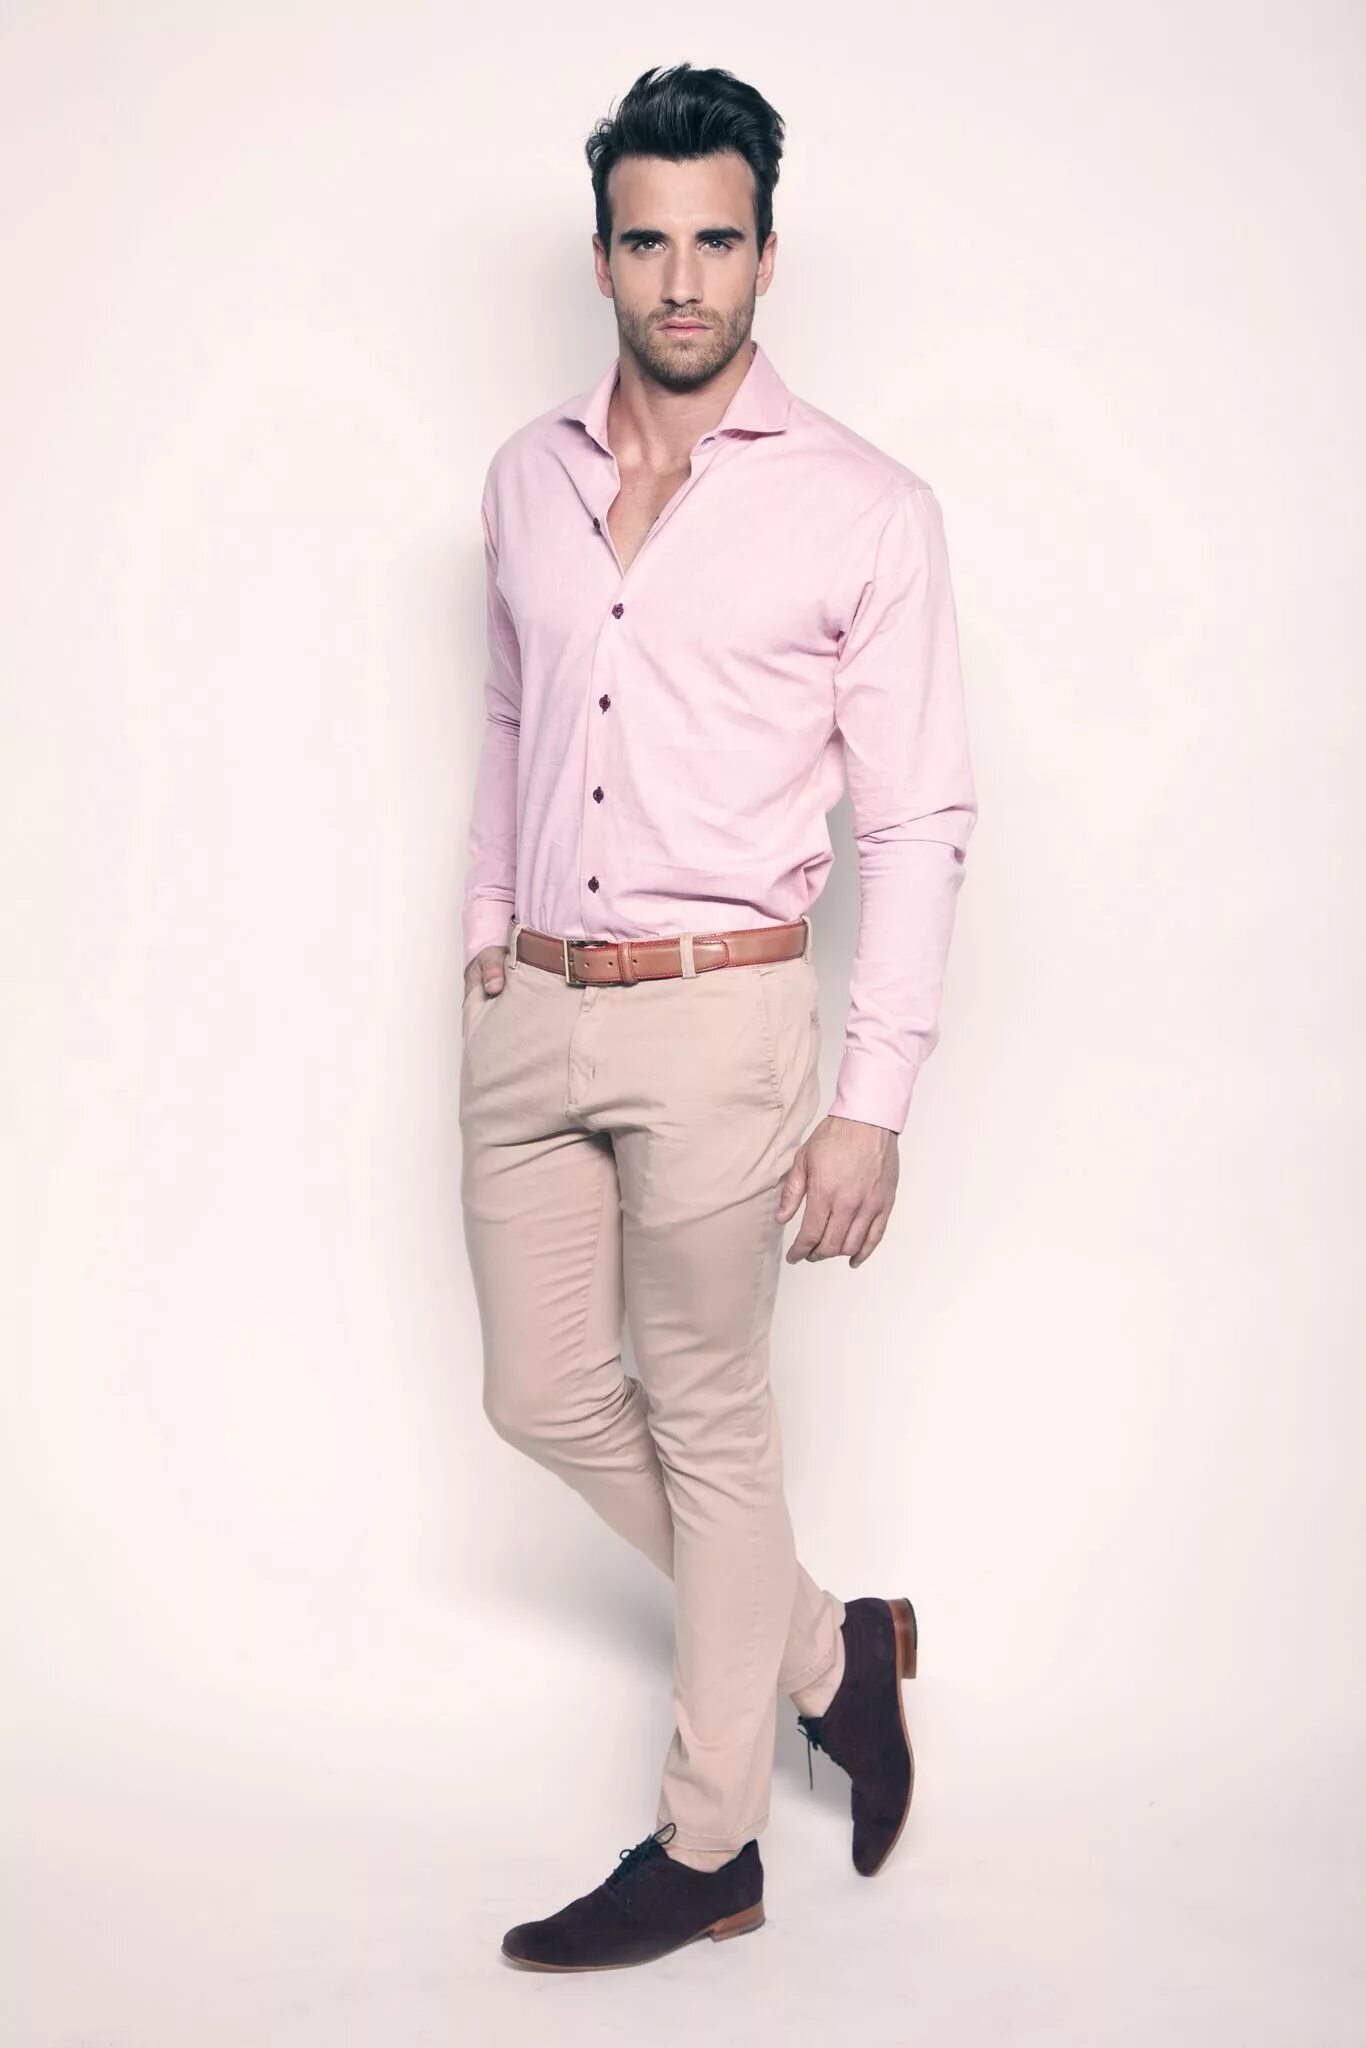 Day new form. Мужская одежда. Полуделовой стиль мужчины. Розовая рубашка мужской стиль. Стиль бежевые брюки и рубашка.